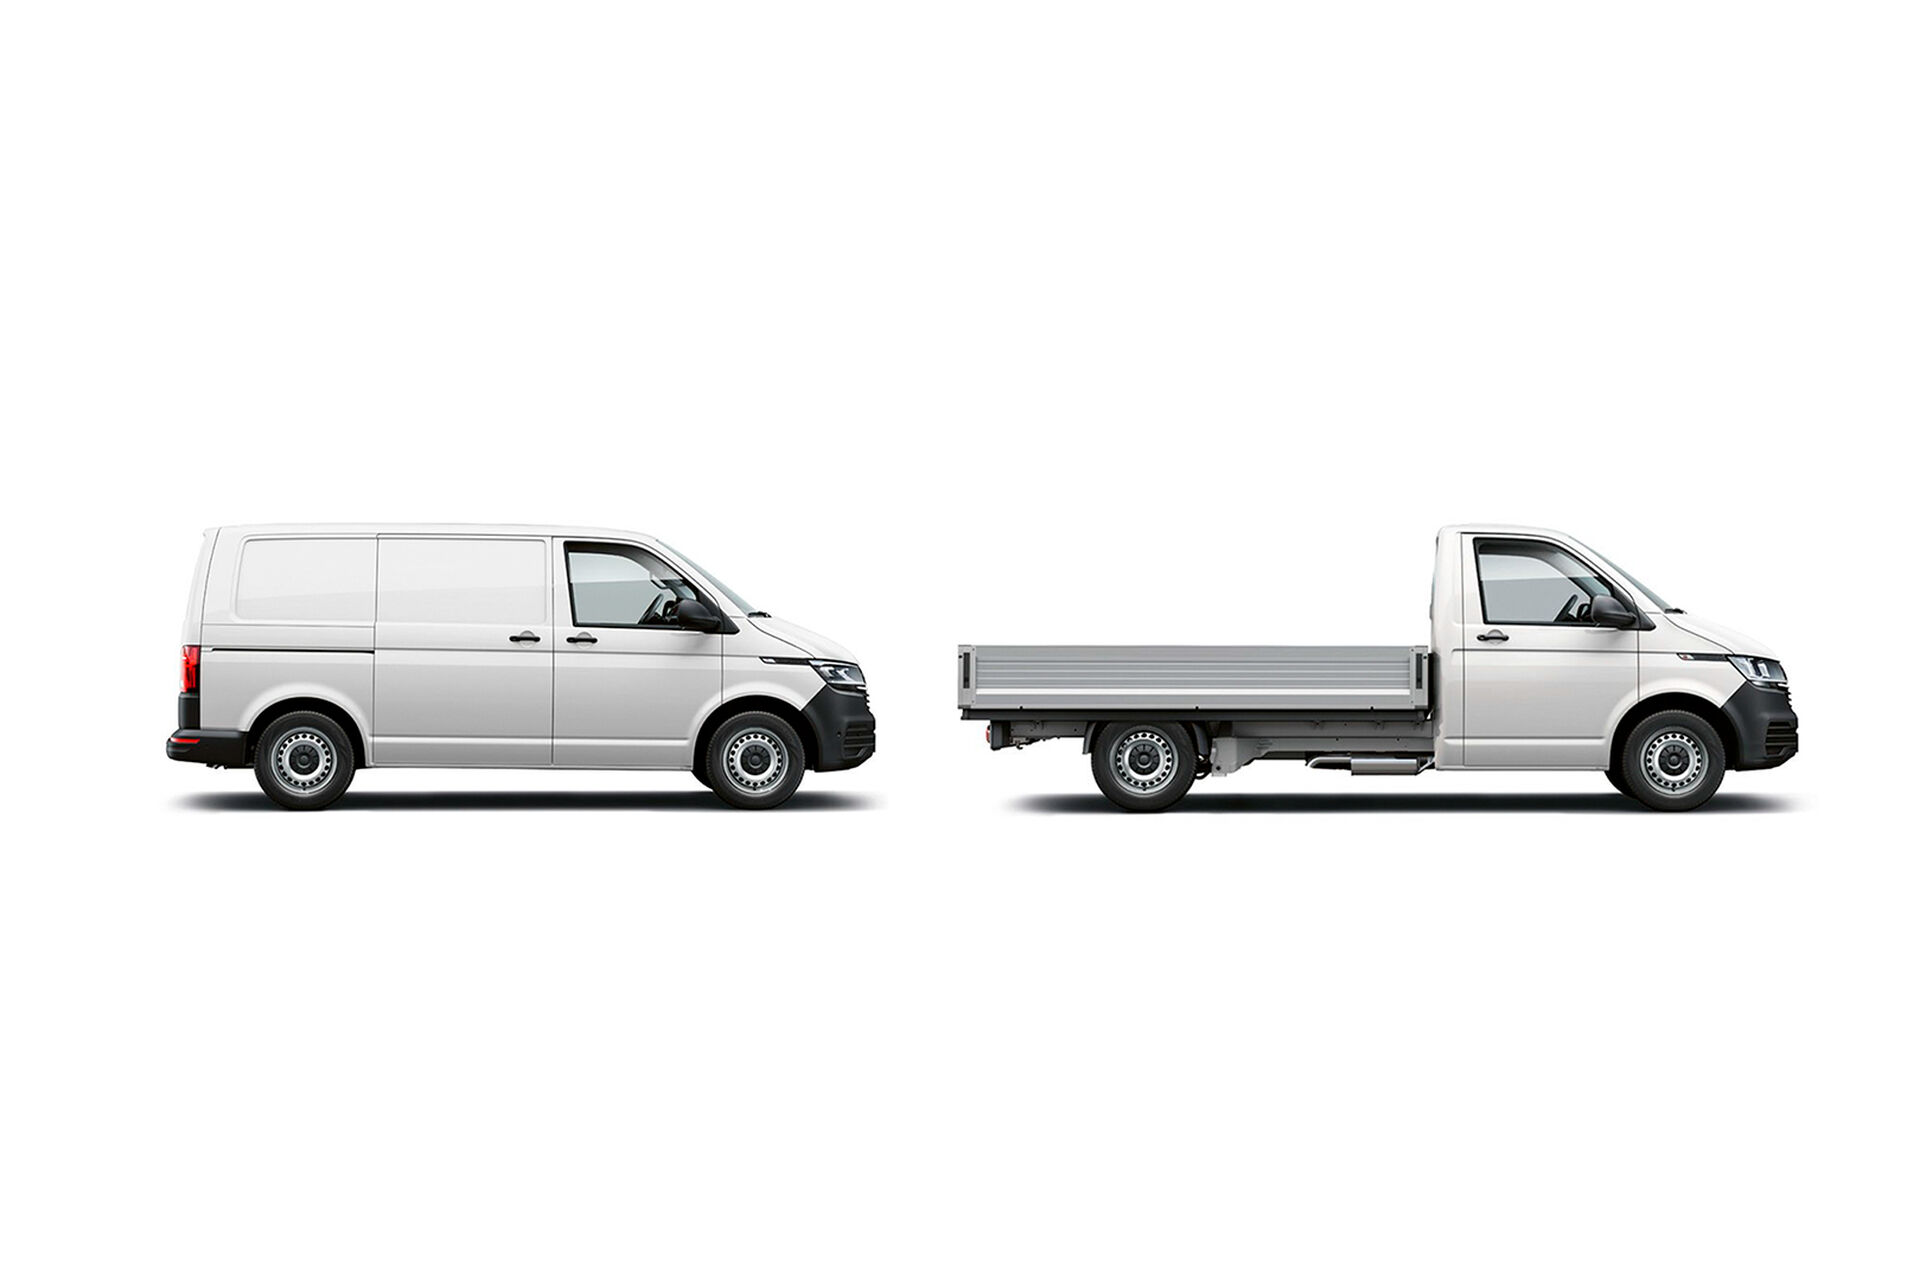 2 versões da carrinha VW Transporter: furgão e caixa aberta.